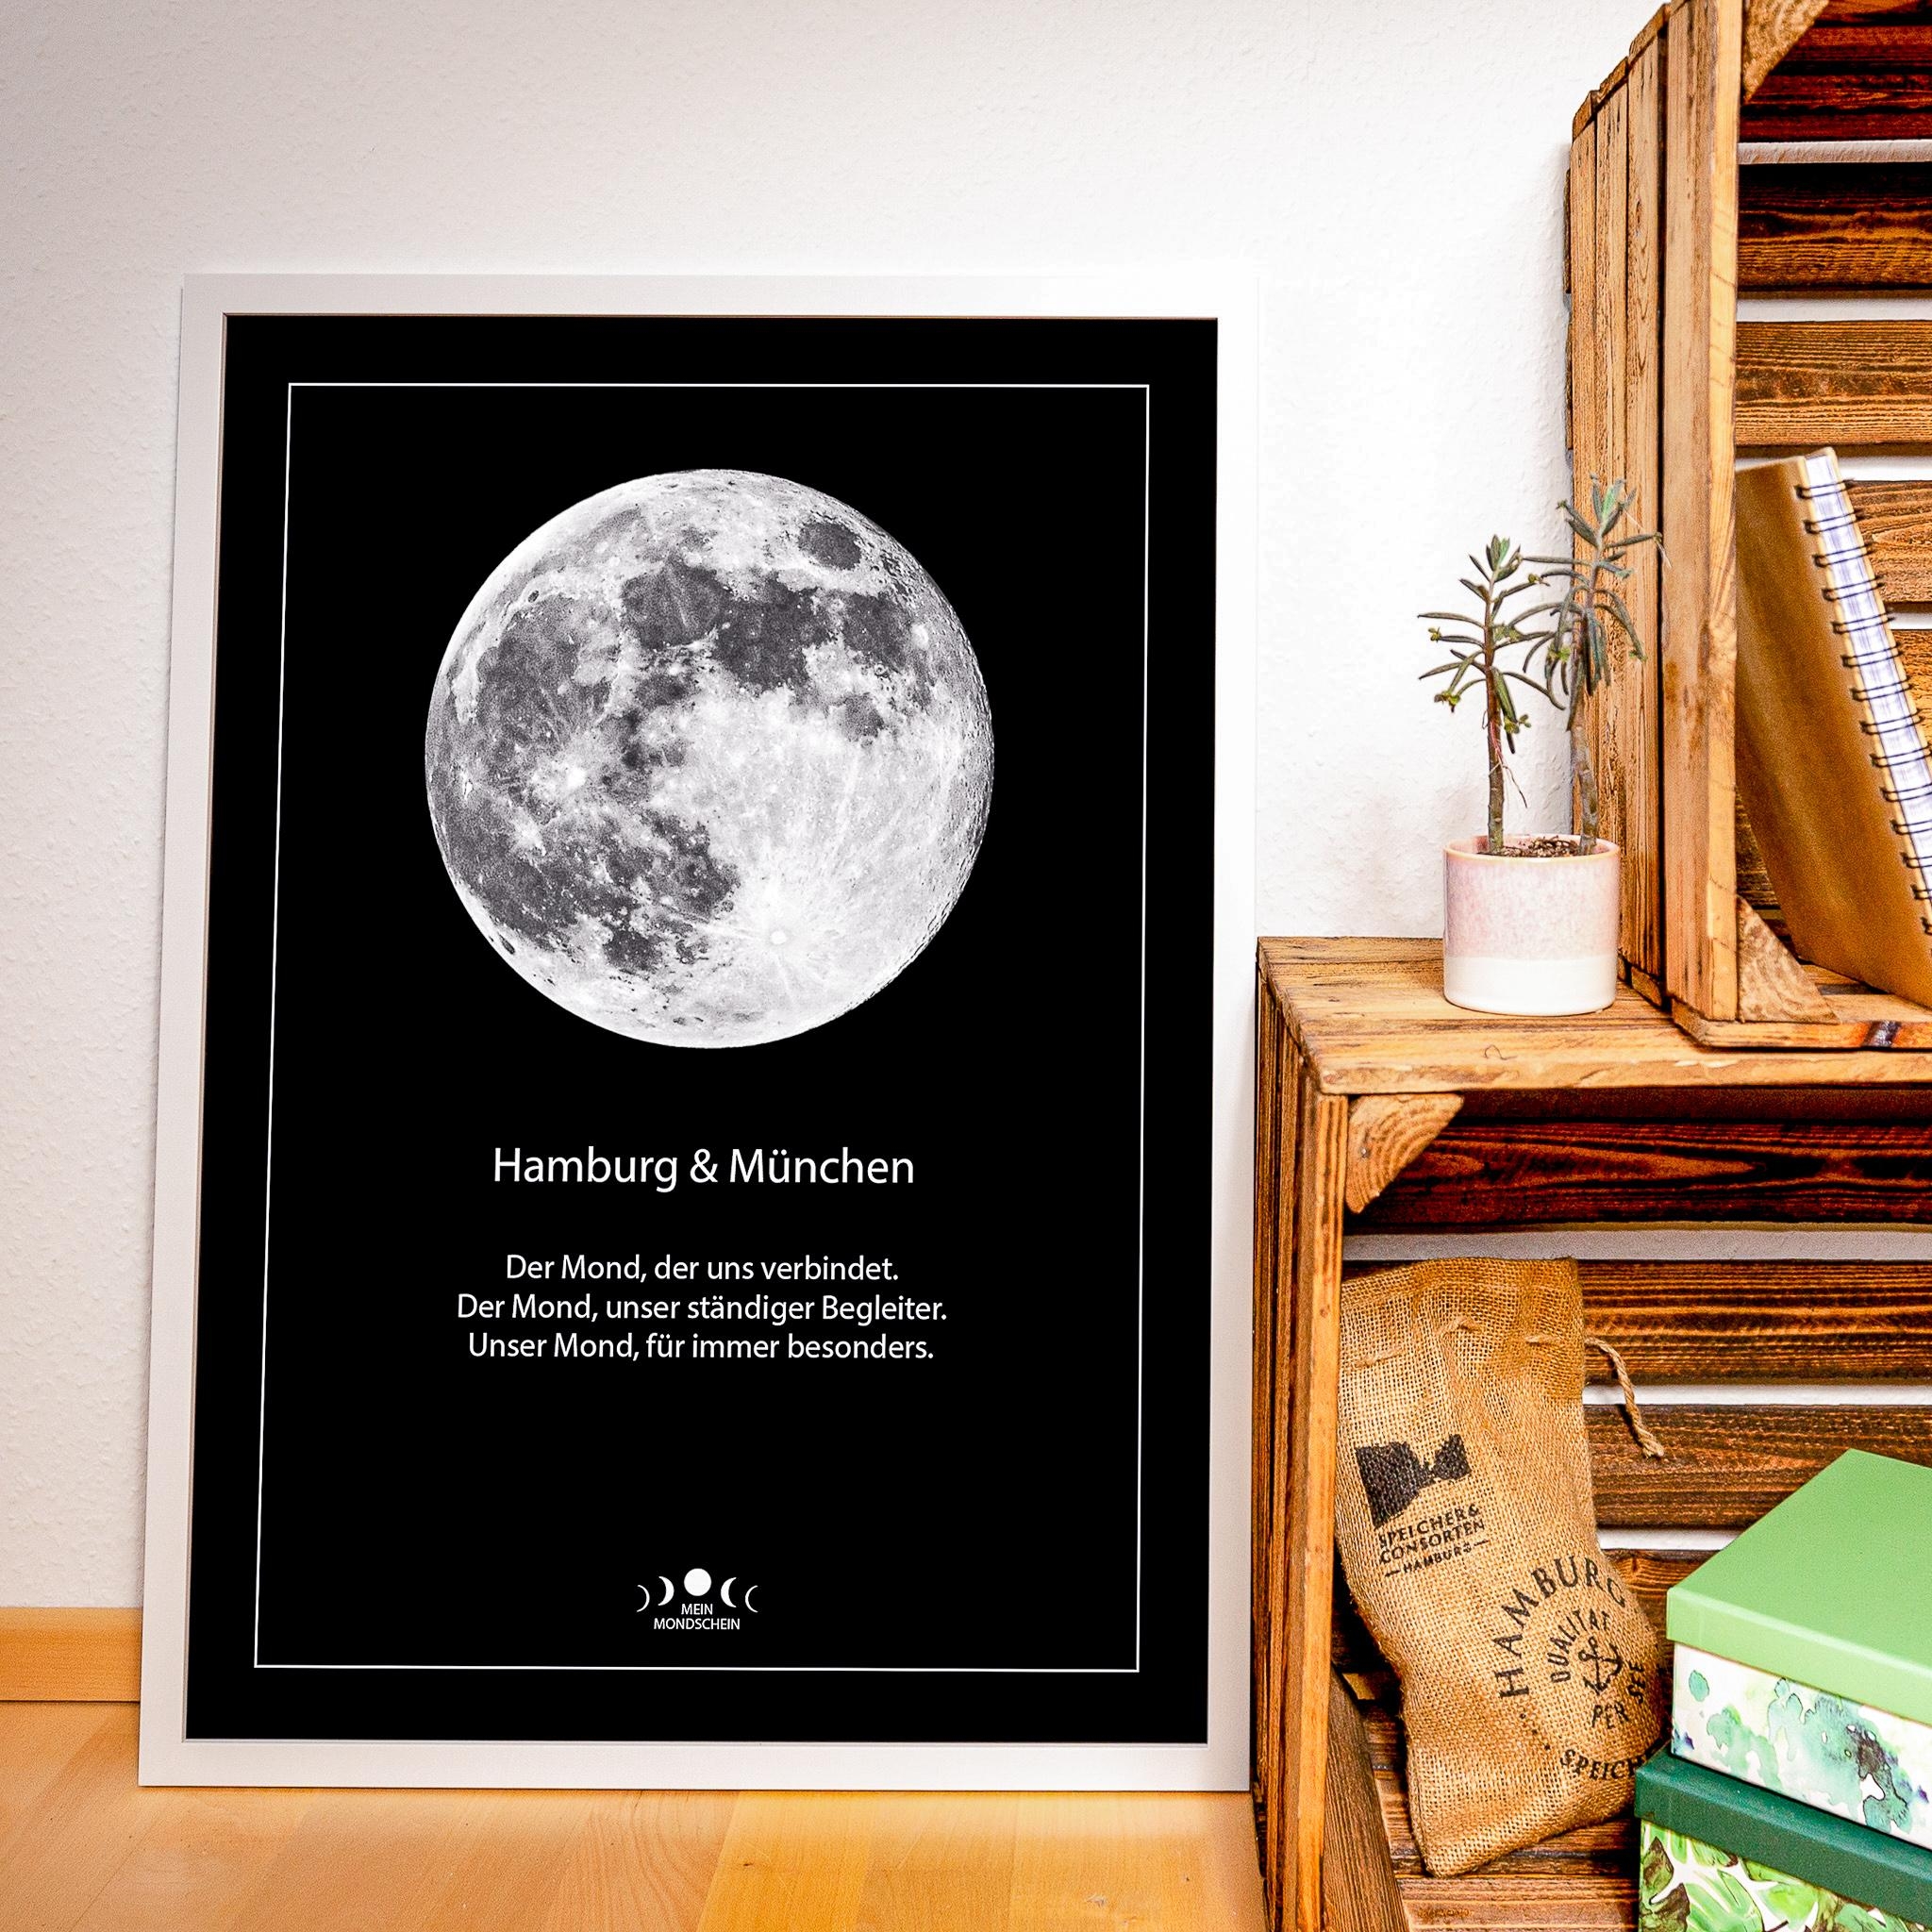 Der Mond verbindet ❤️ #poster #geschenk #wandbild